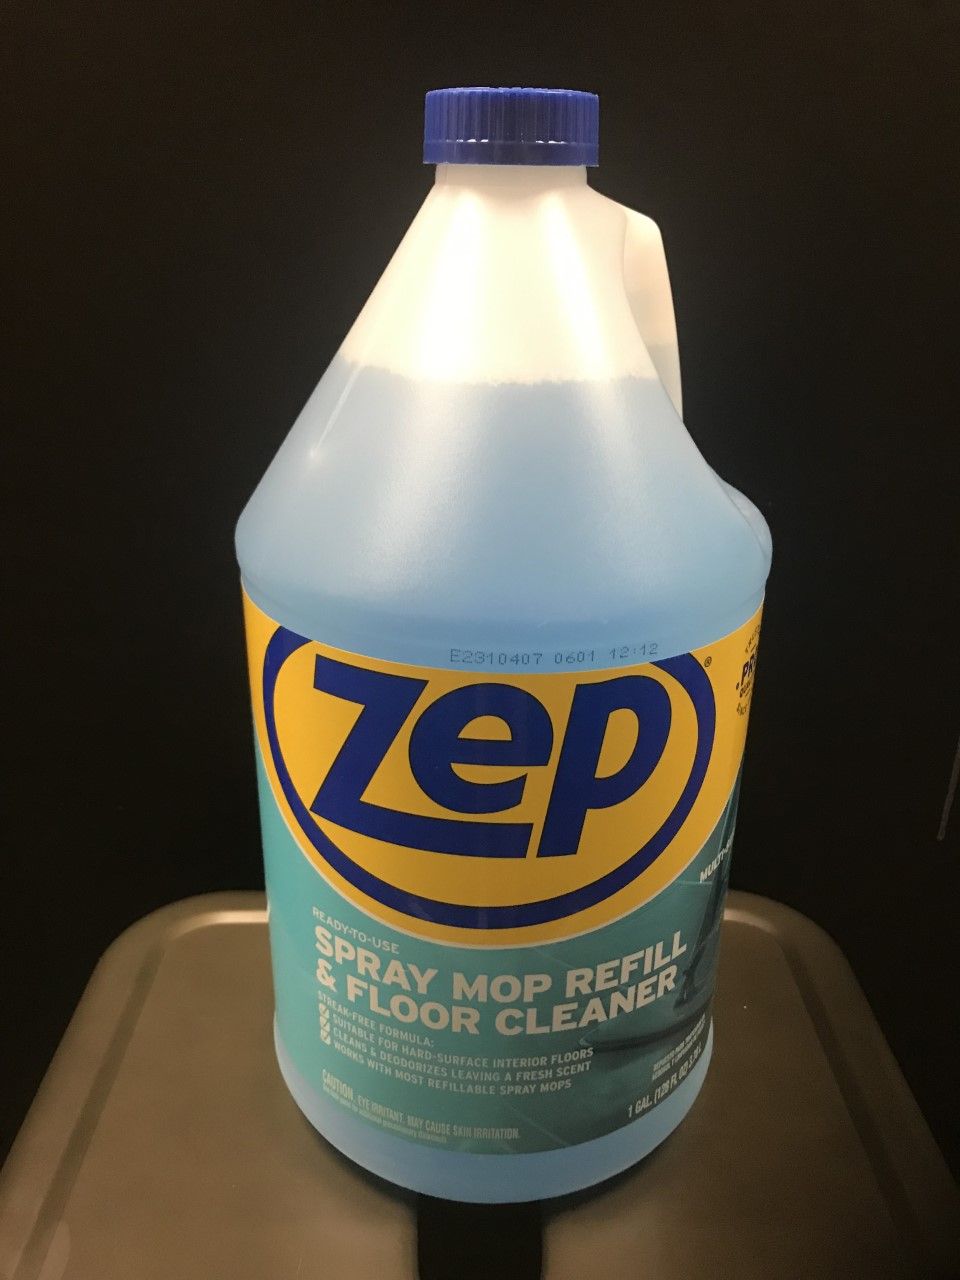 Zep Spray Mop Refill & Floor Cleaner.jpg